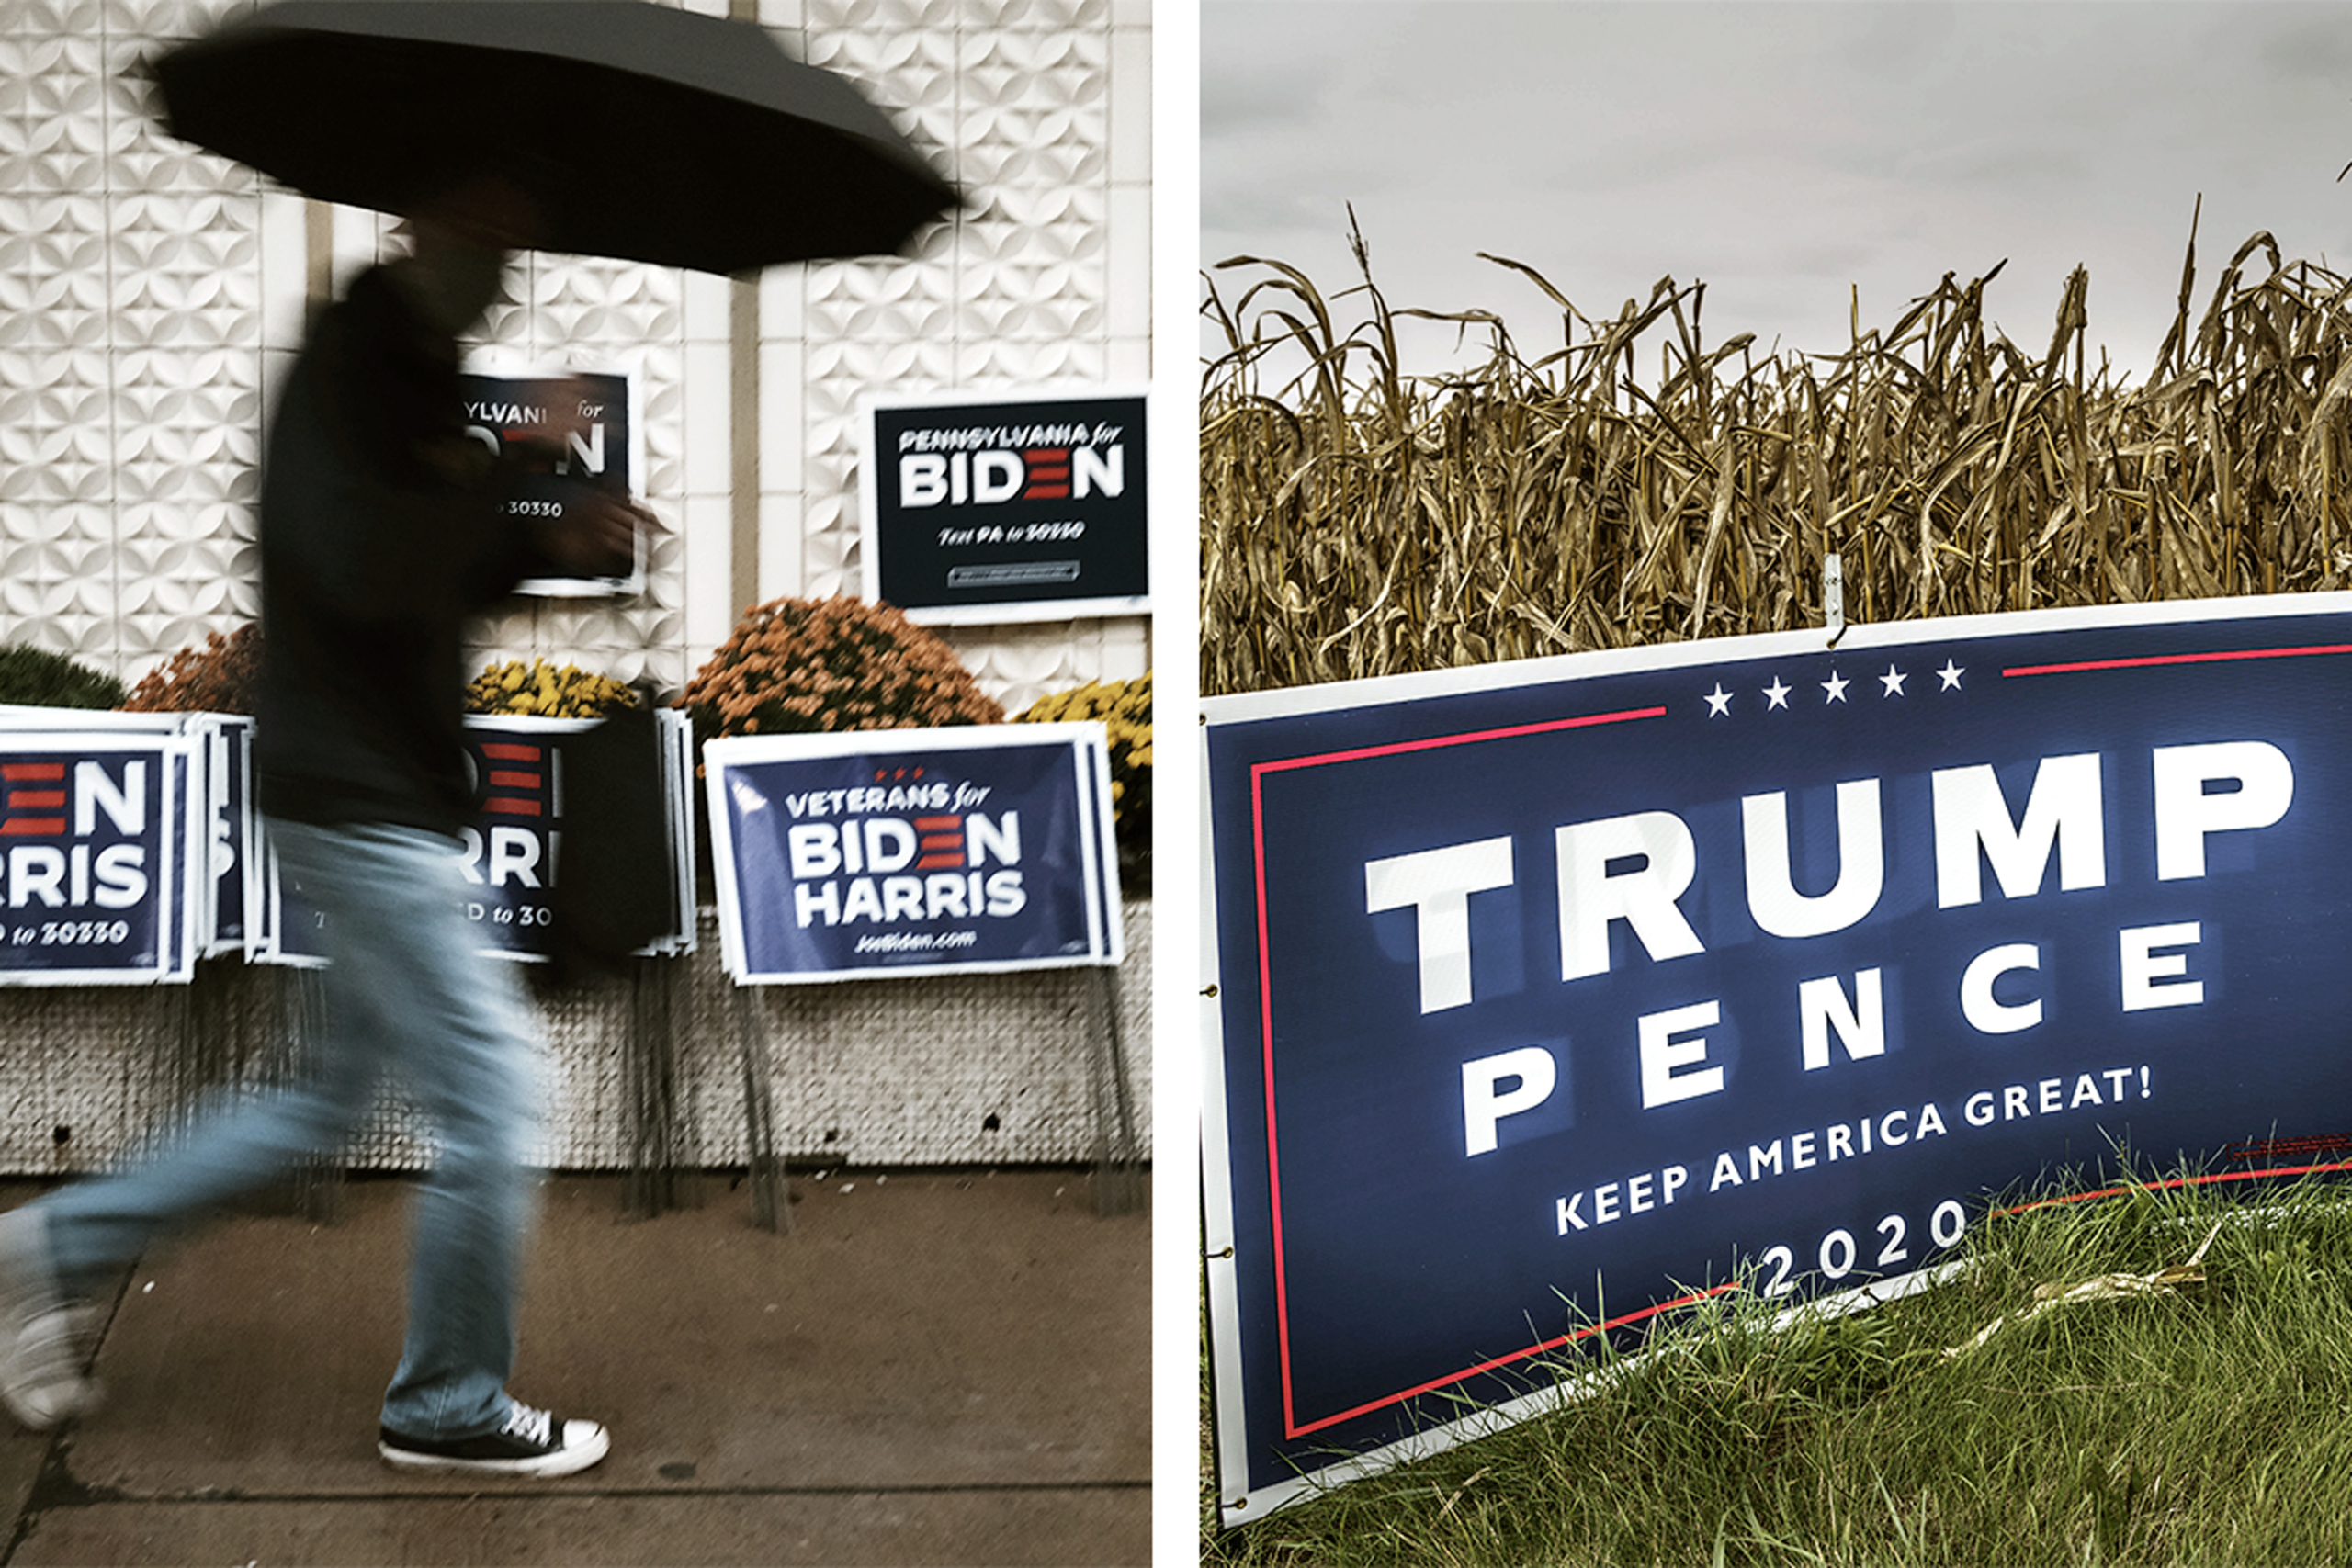 (Trái) Một người đàn ông đi qua các tấm biển ủng hộ ông Joe Biden ở Scranton, Pennsylvania, vào ngày 01/11/2020. (Phải) Một tấm biển của chiến dịch tranh cử Trump-Pence ở Westby, Wisconsin, vào ngày 03/10/2020. (Ảnh: Spencer Platt/Getty Images, Kerem Yucel/AFP qua Getty Images)